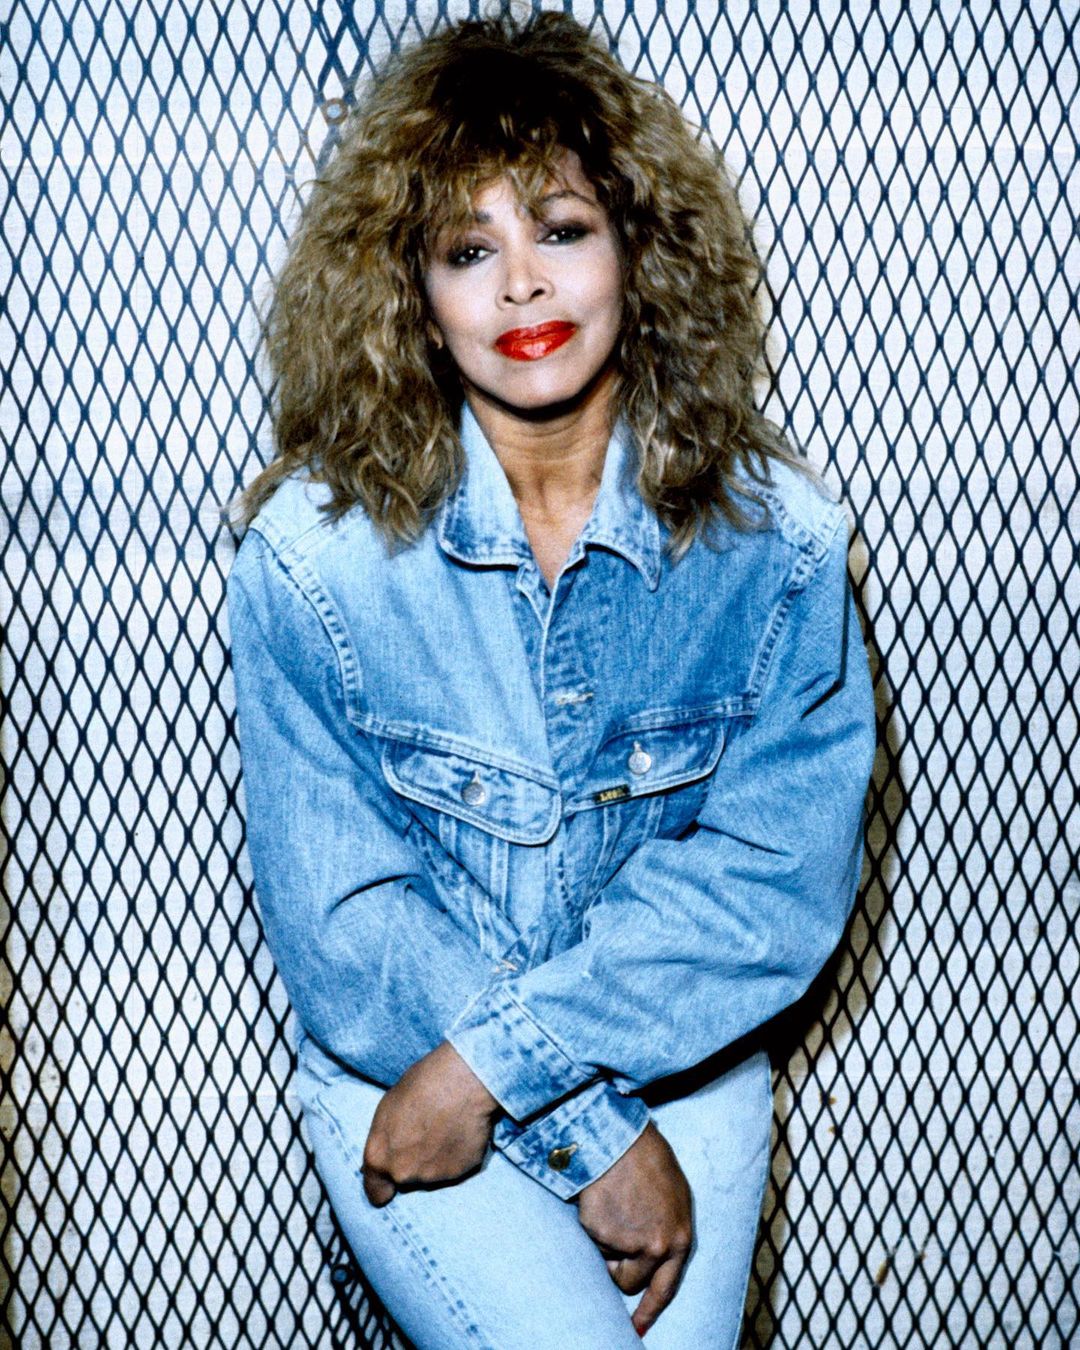 Tina Turner tragikus bejelentése: meghalt a második fia is